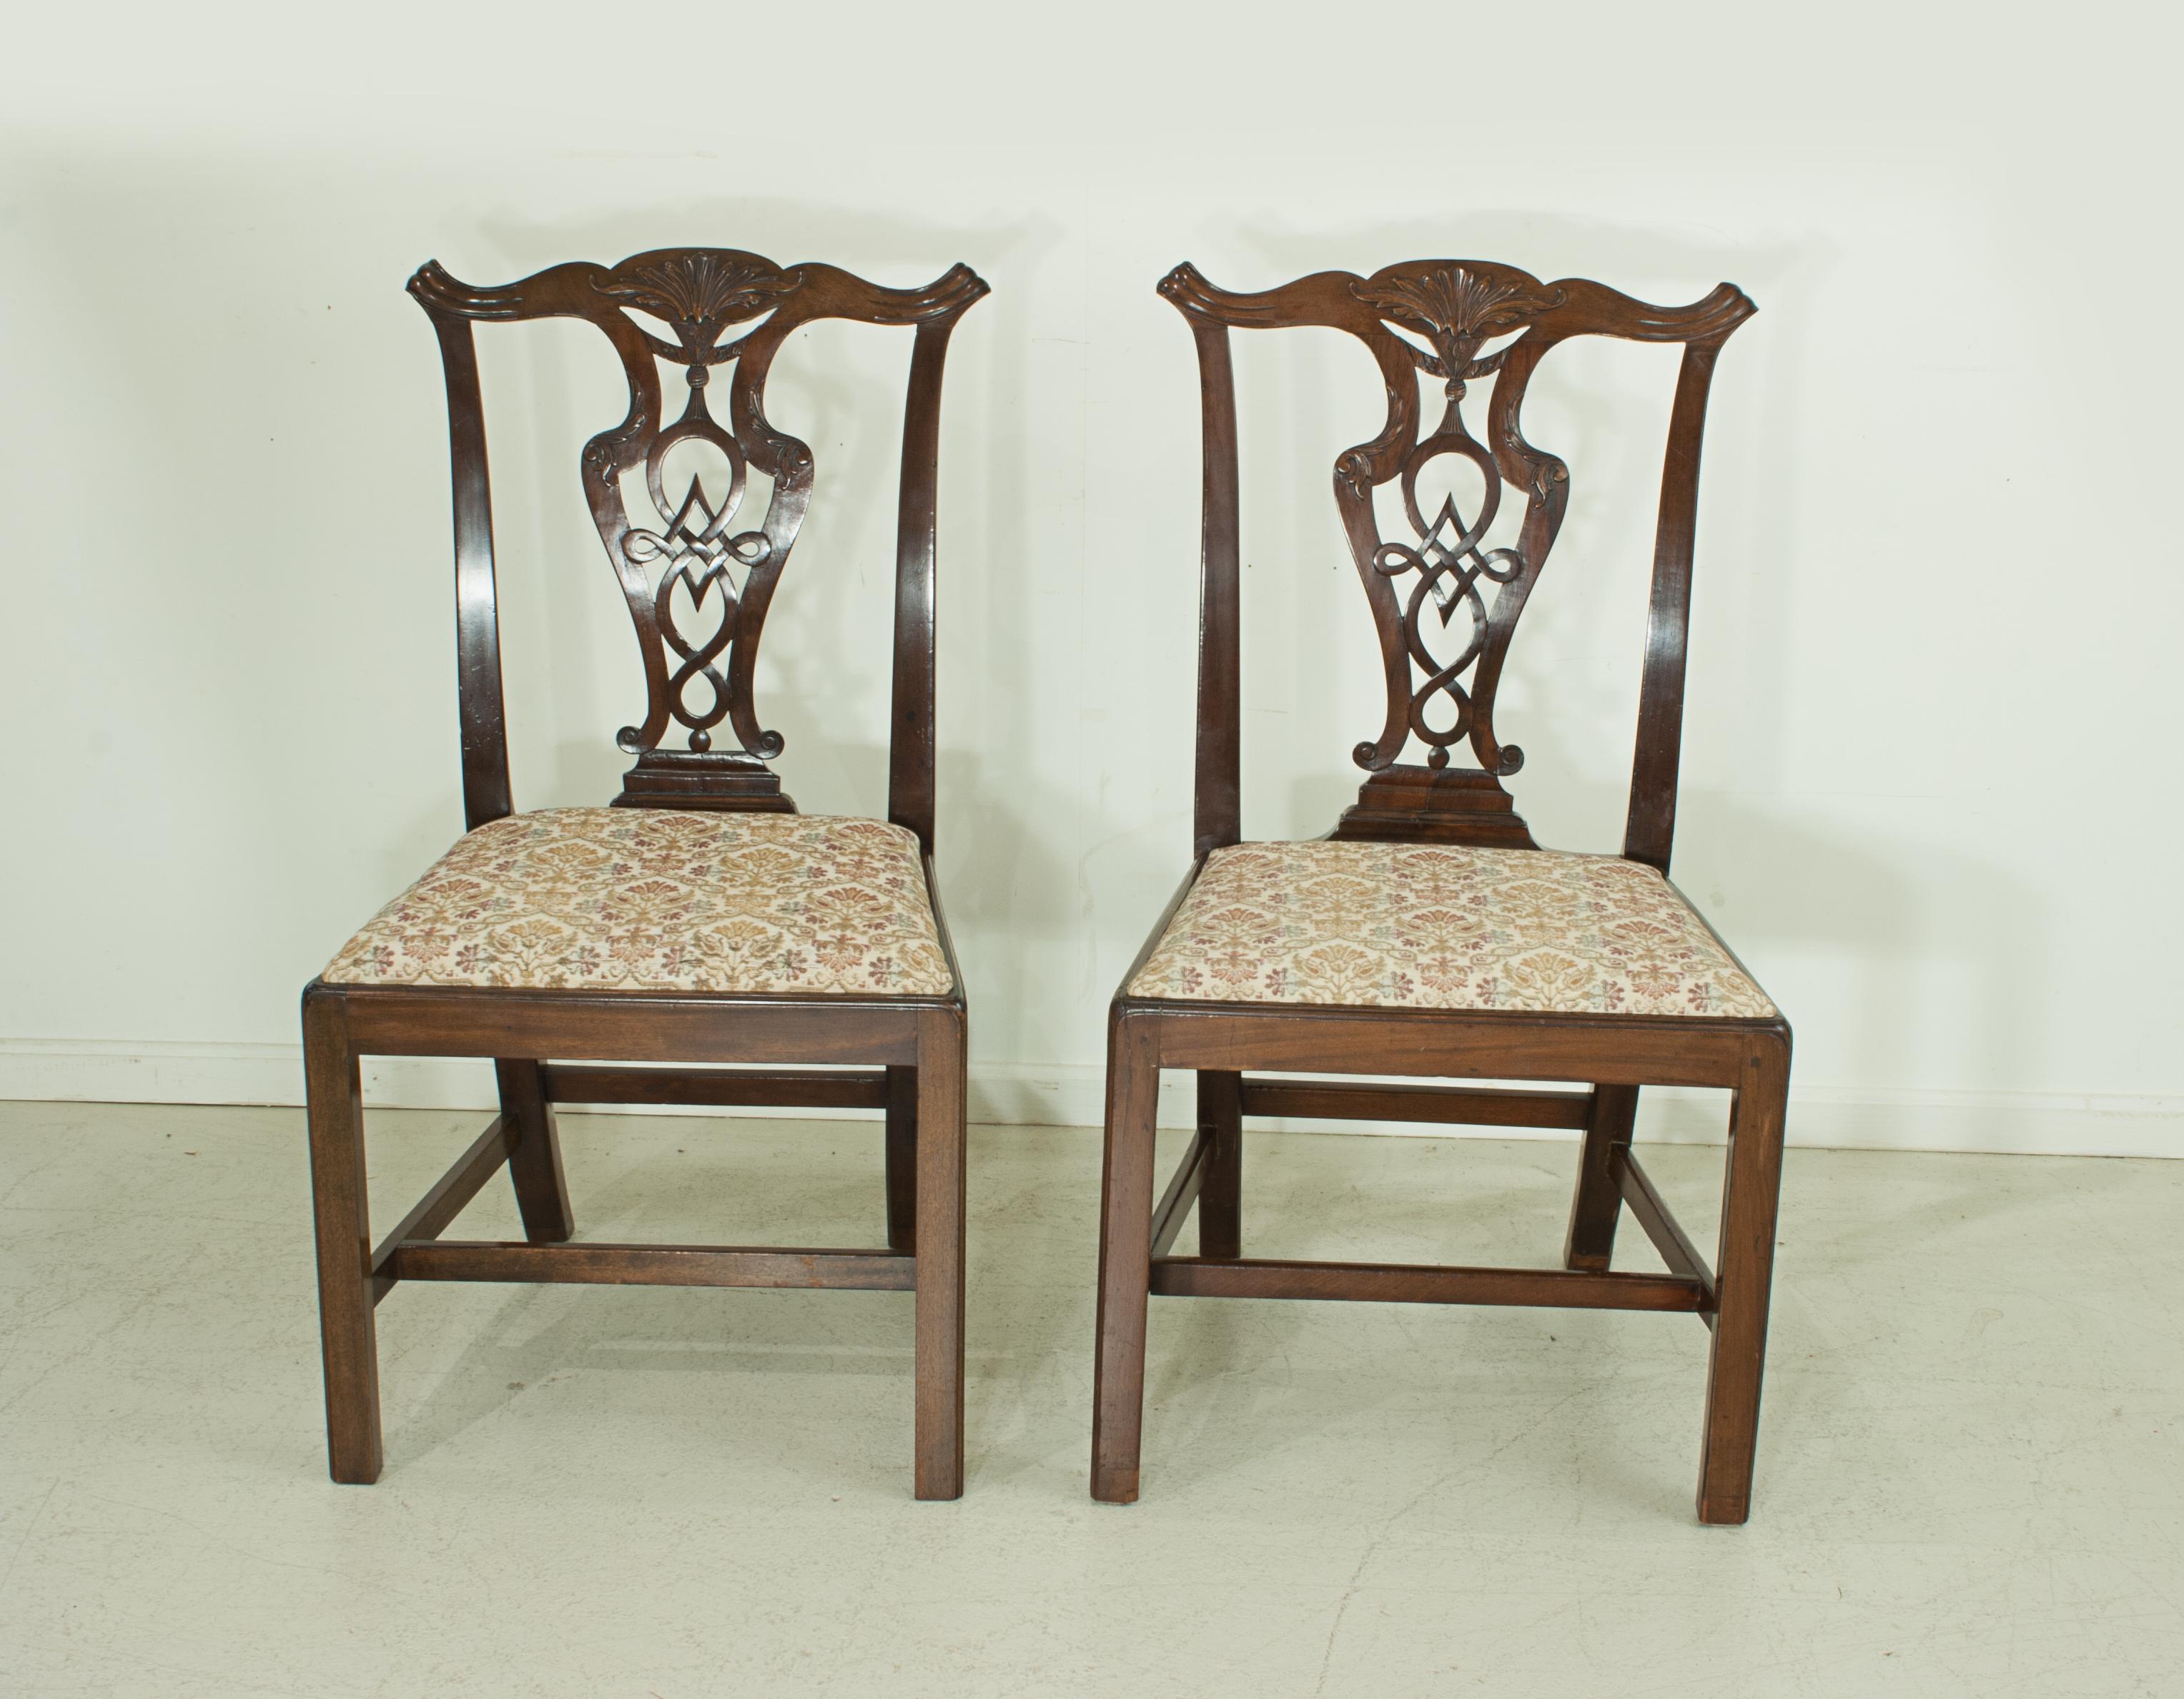 Paire de chaises de salle à manger en acajou de style Chippendale.
Paire de chaises de salle à manger en acajou de très bonne qualité, datant du début du XIXe siècle, de style Chippendale. Les chaises sont dotées de dossiers sculptés complexes et